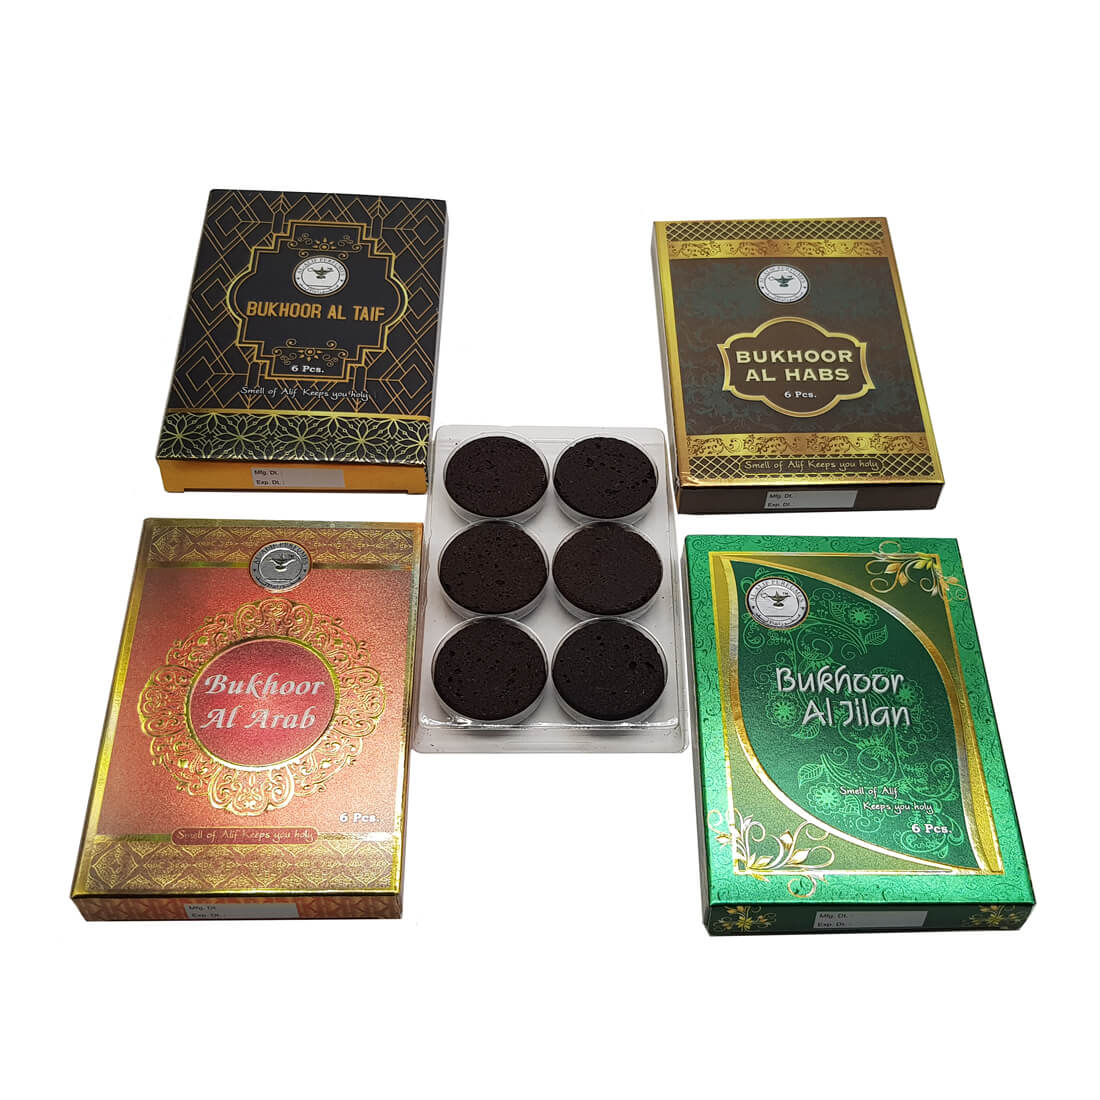 Al Alif Bukhoor Al Arab, Al Taif, Al Habs & Al Jilam Bakhoor Coin 6 pcs Home Fragrance Pack of 4